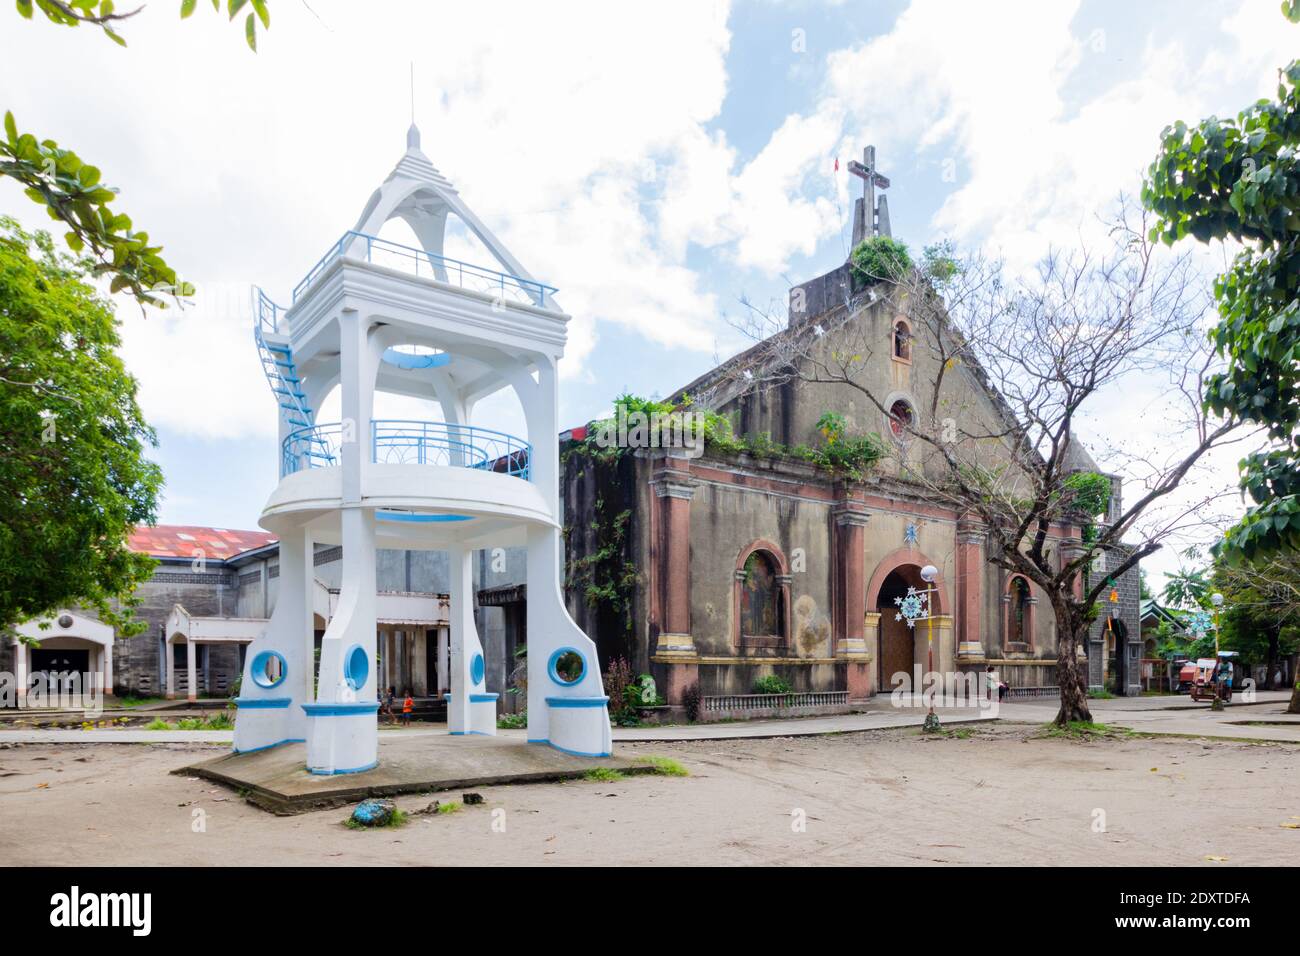 Facade of Bulan Church in Sorsogon, Philippines Stock Photo